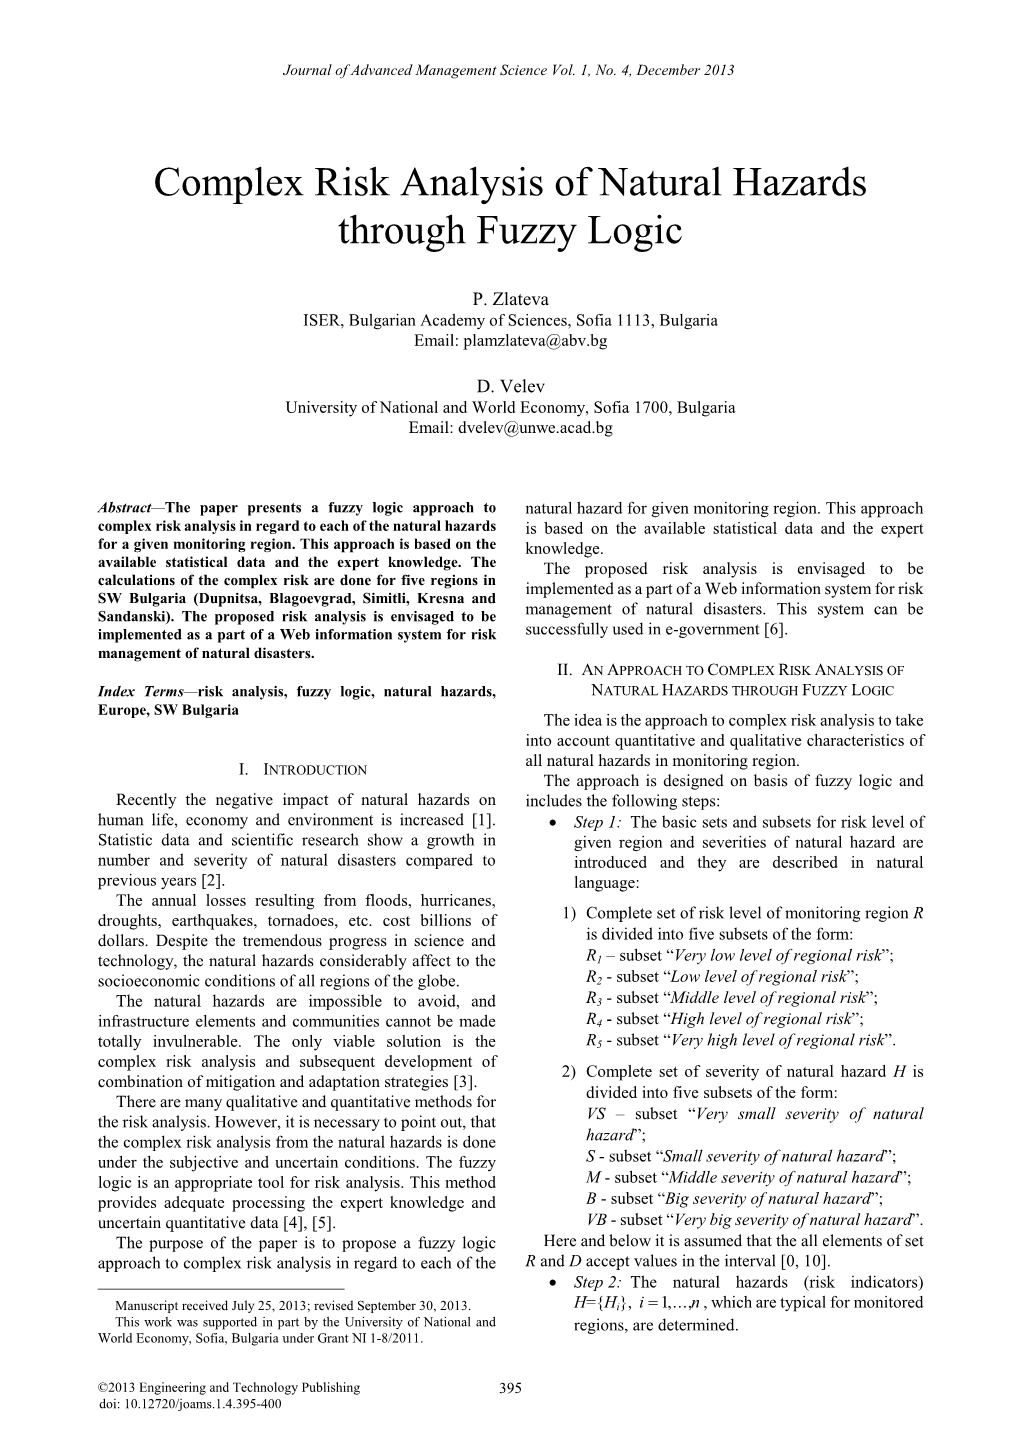 Complex Risk Analysis of Natural Hazards Through Fuzzy Logic